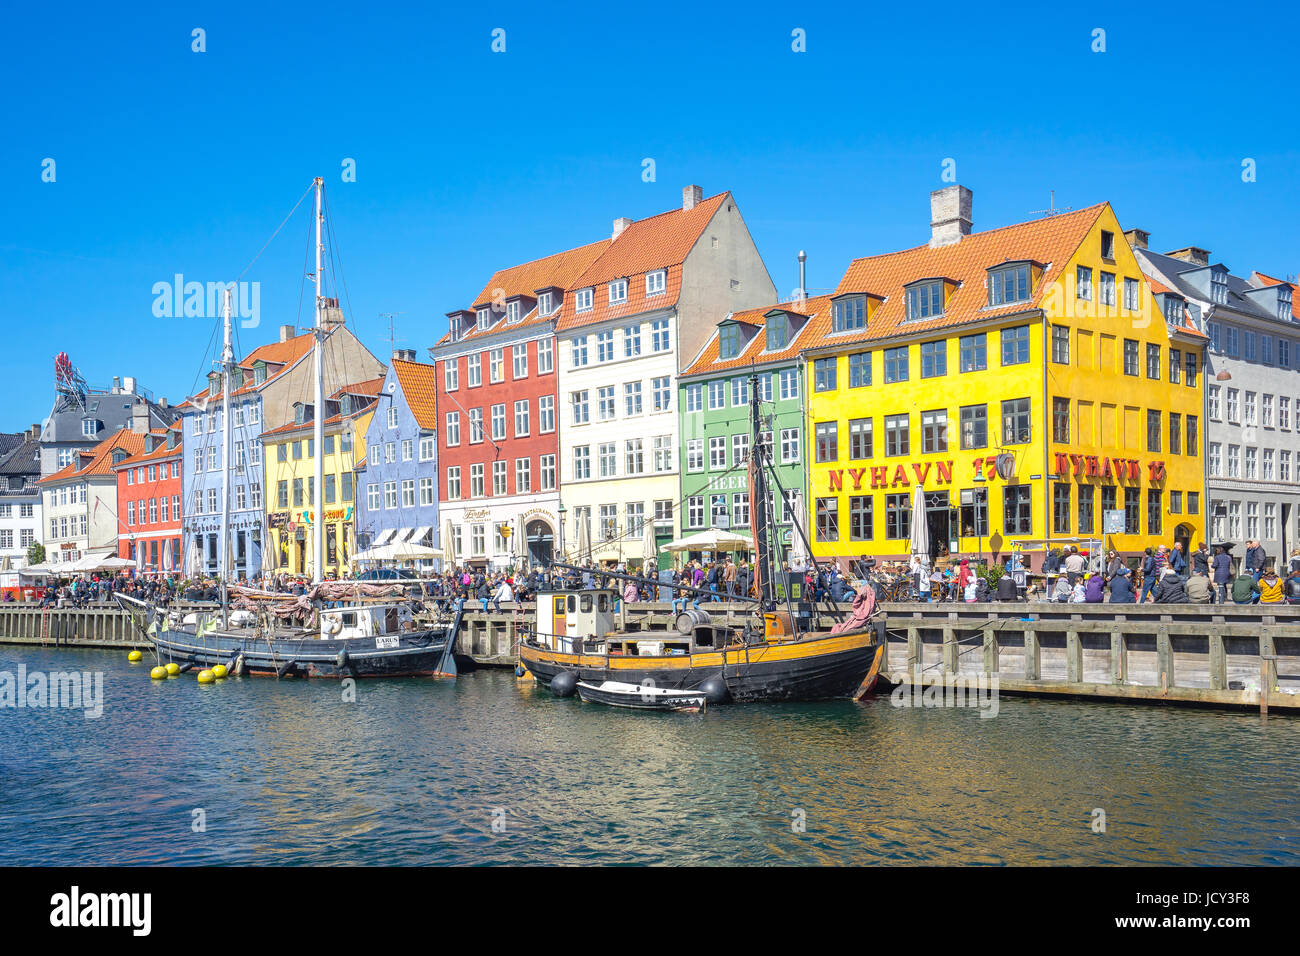 Kopenhagen, Dänemark - 1. Mai 2017: Nyhavn war ursprünglich ein geschäftiger kommerziellen Hafen wo Schiffe aus der ganzen Welt Andocken würde. Das Gebiet war brechend voll, wi Stockfoto